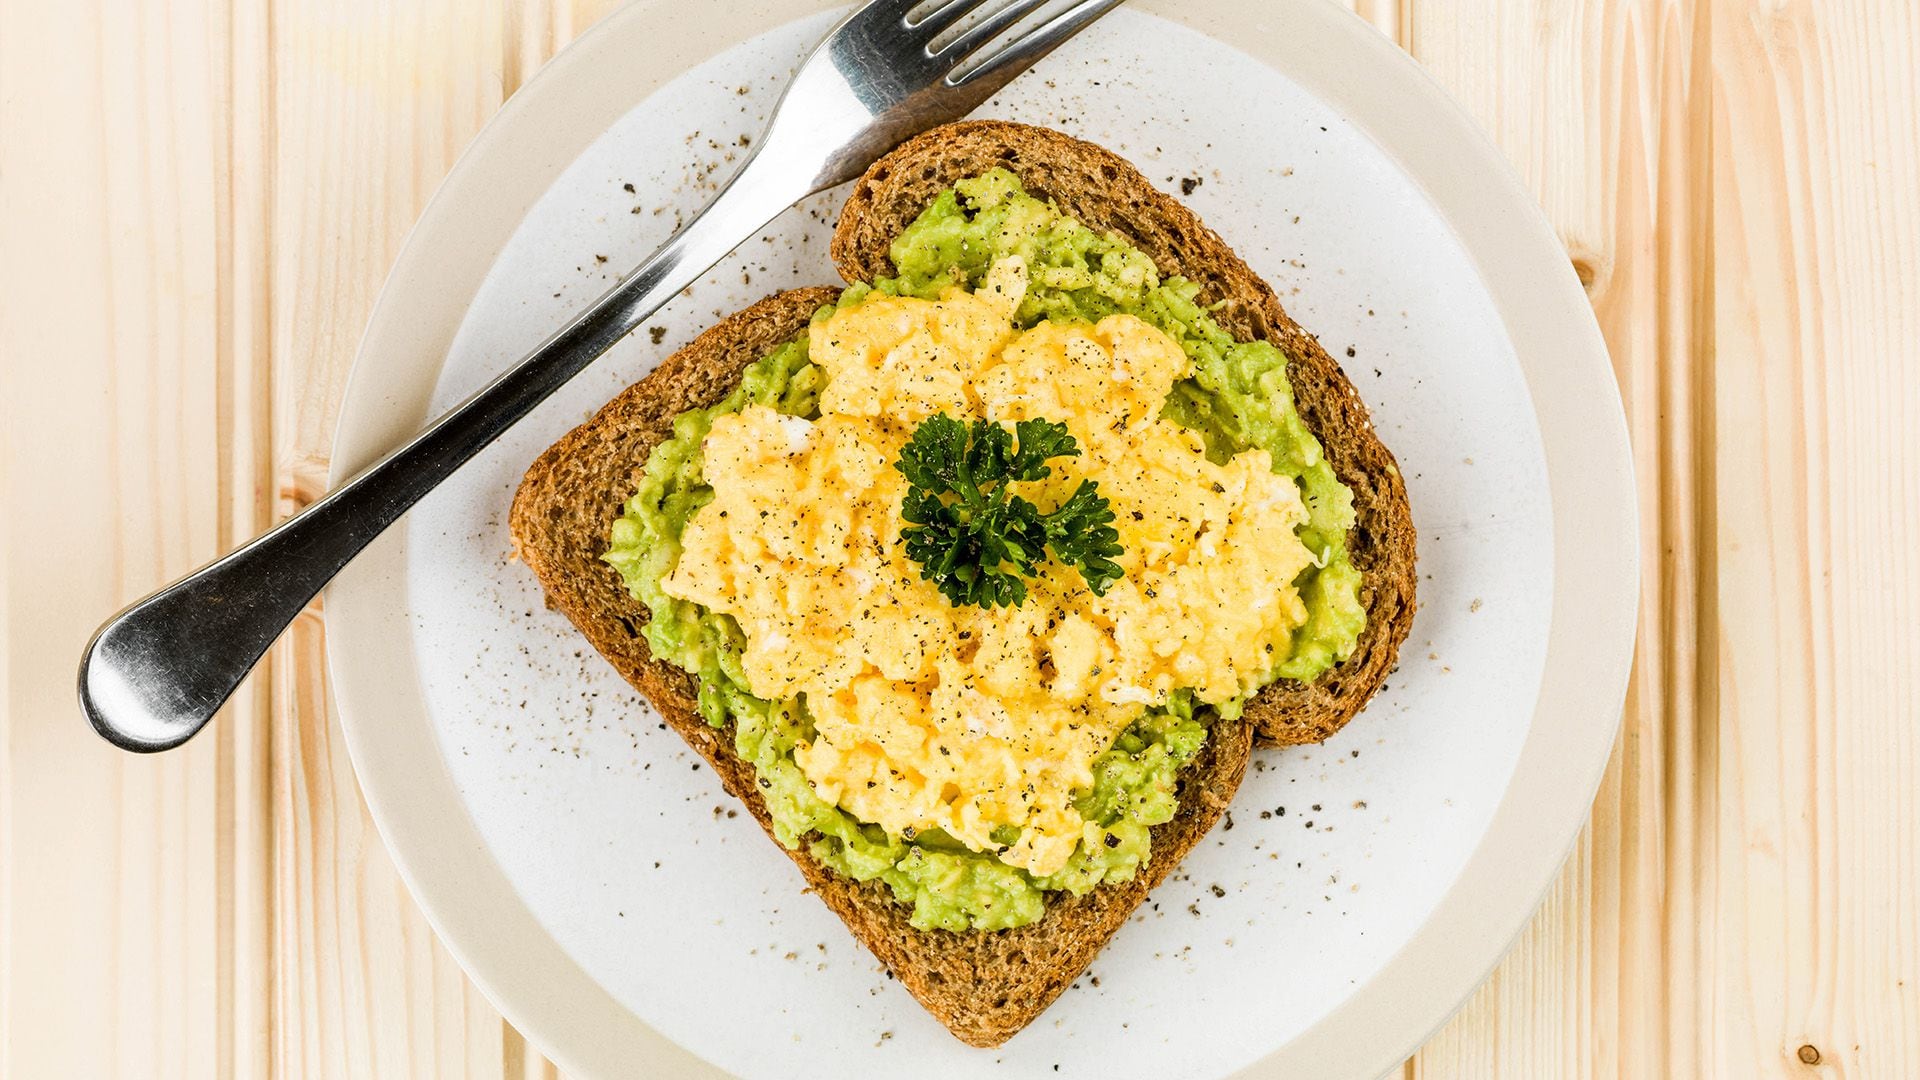 B-Fresh incluye opciones veganas, vegetarianas, proteicas y libre de gluten y sus productos buscan en el plato final un balance nutricional y enfocado en la salud integral de las personas (Shutterstock)